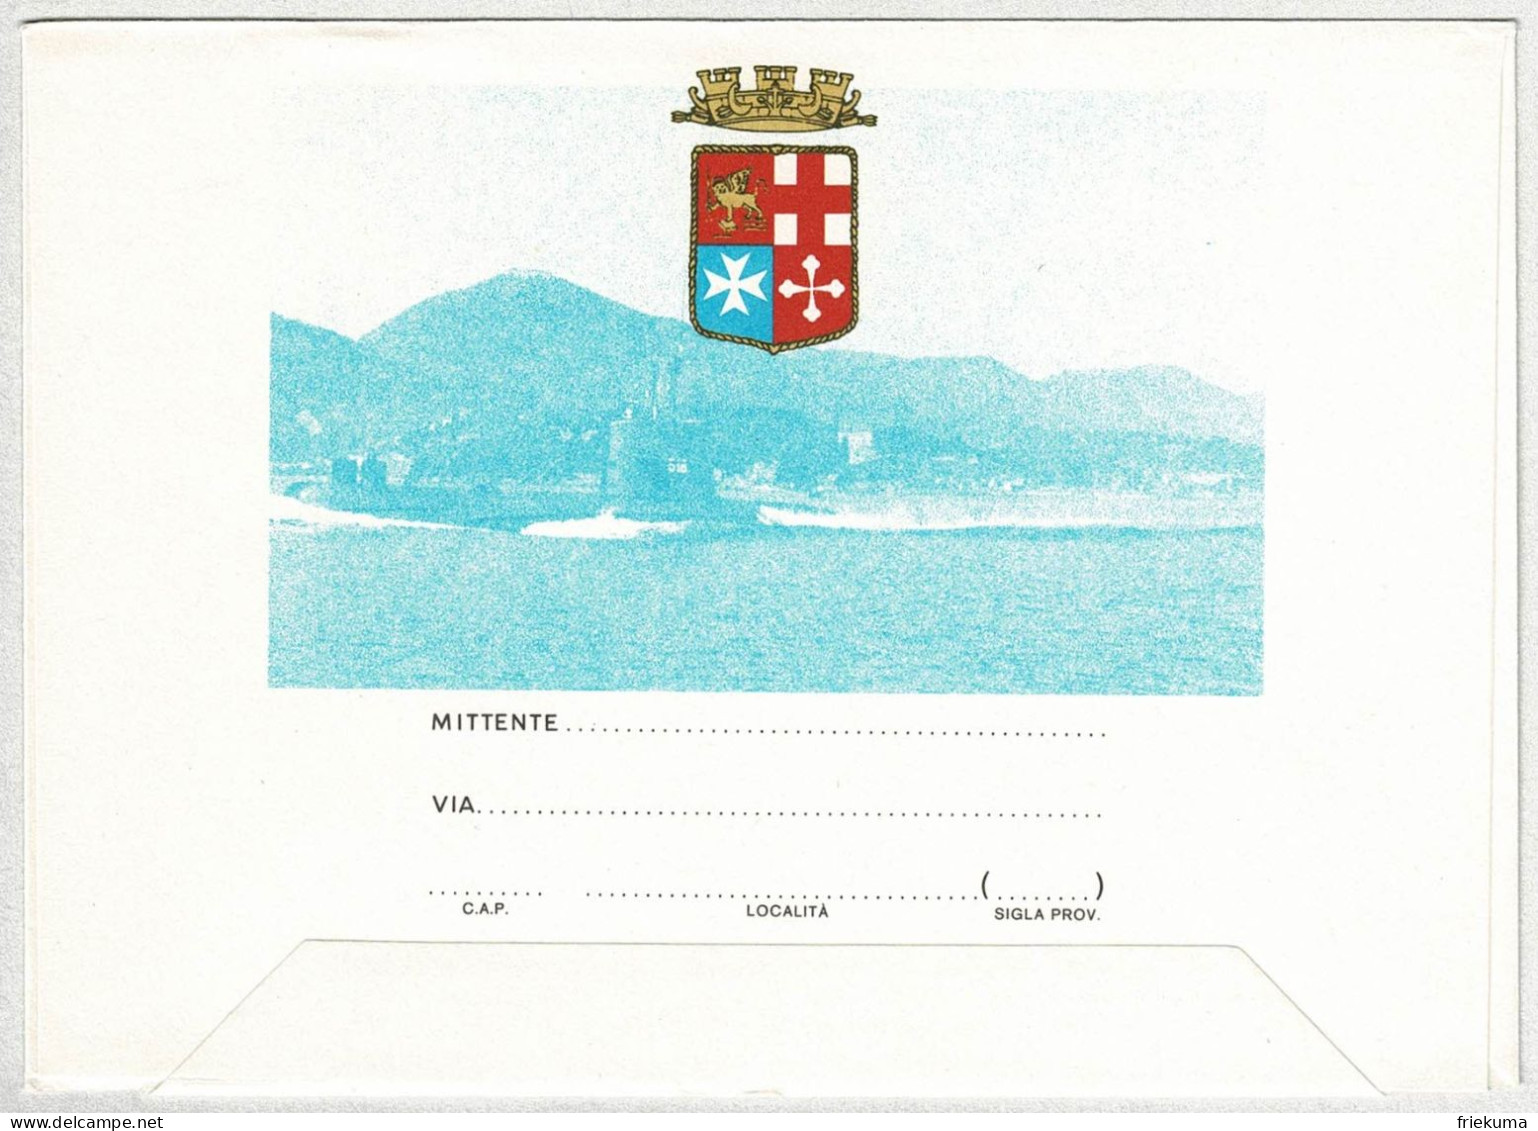 Italien / Italia 1990, Ganzsachen-Umschlag Sommergibili Italiani, U-Boote, Schmuck, Delphine - Duikboten